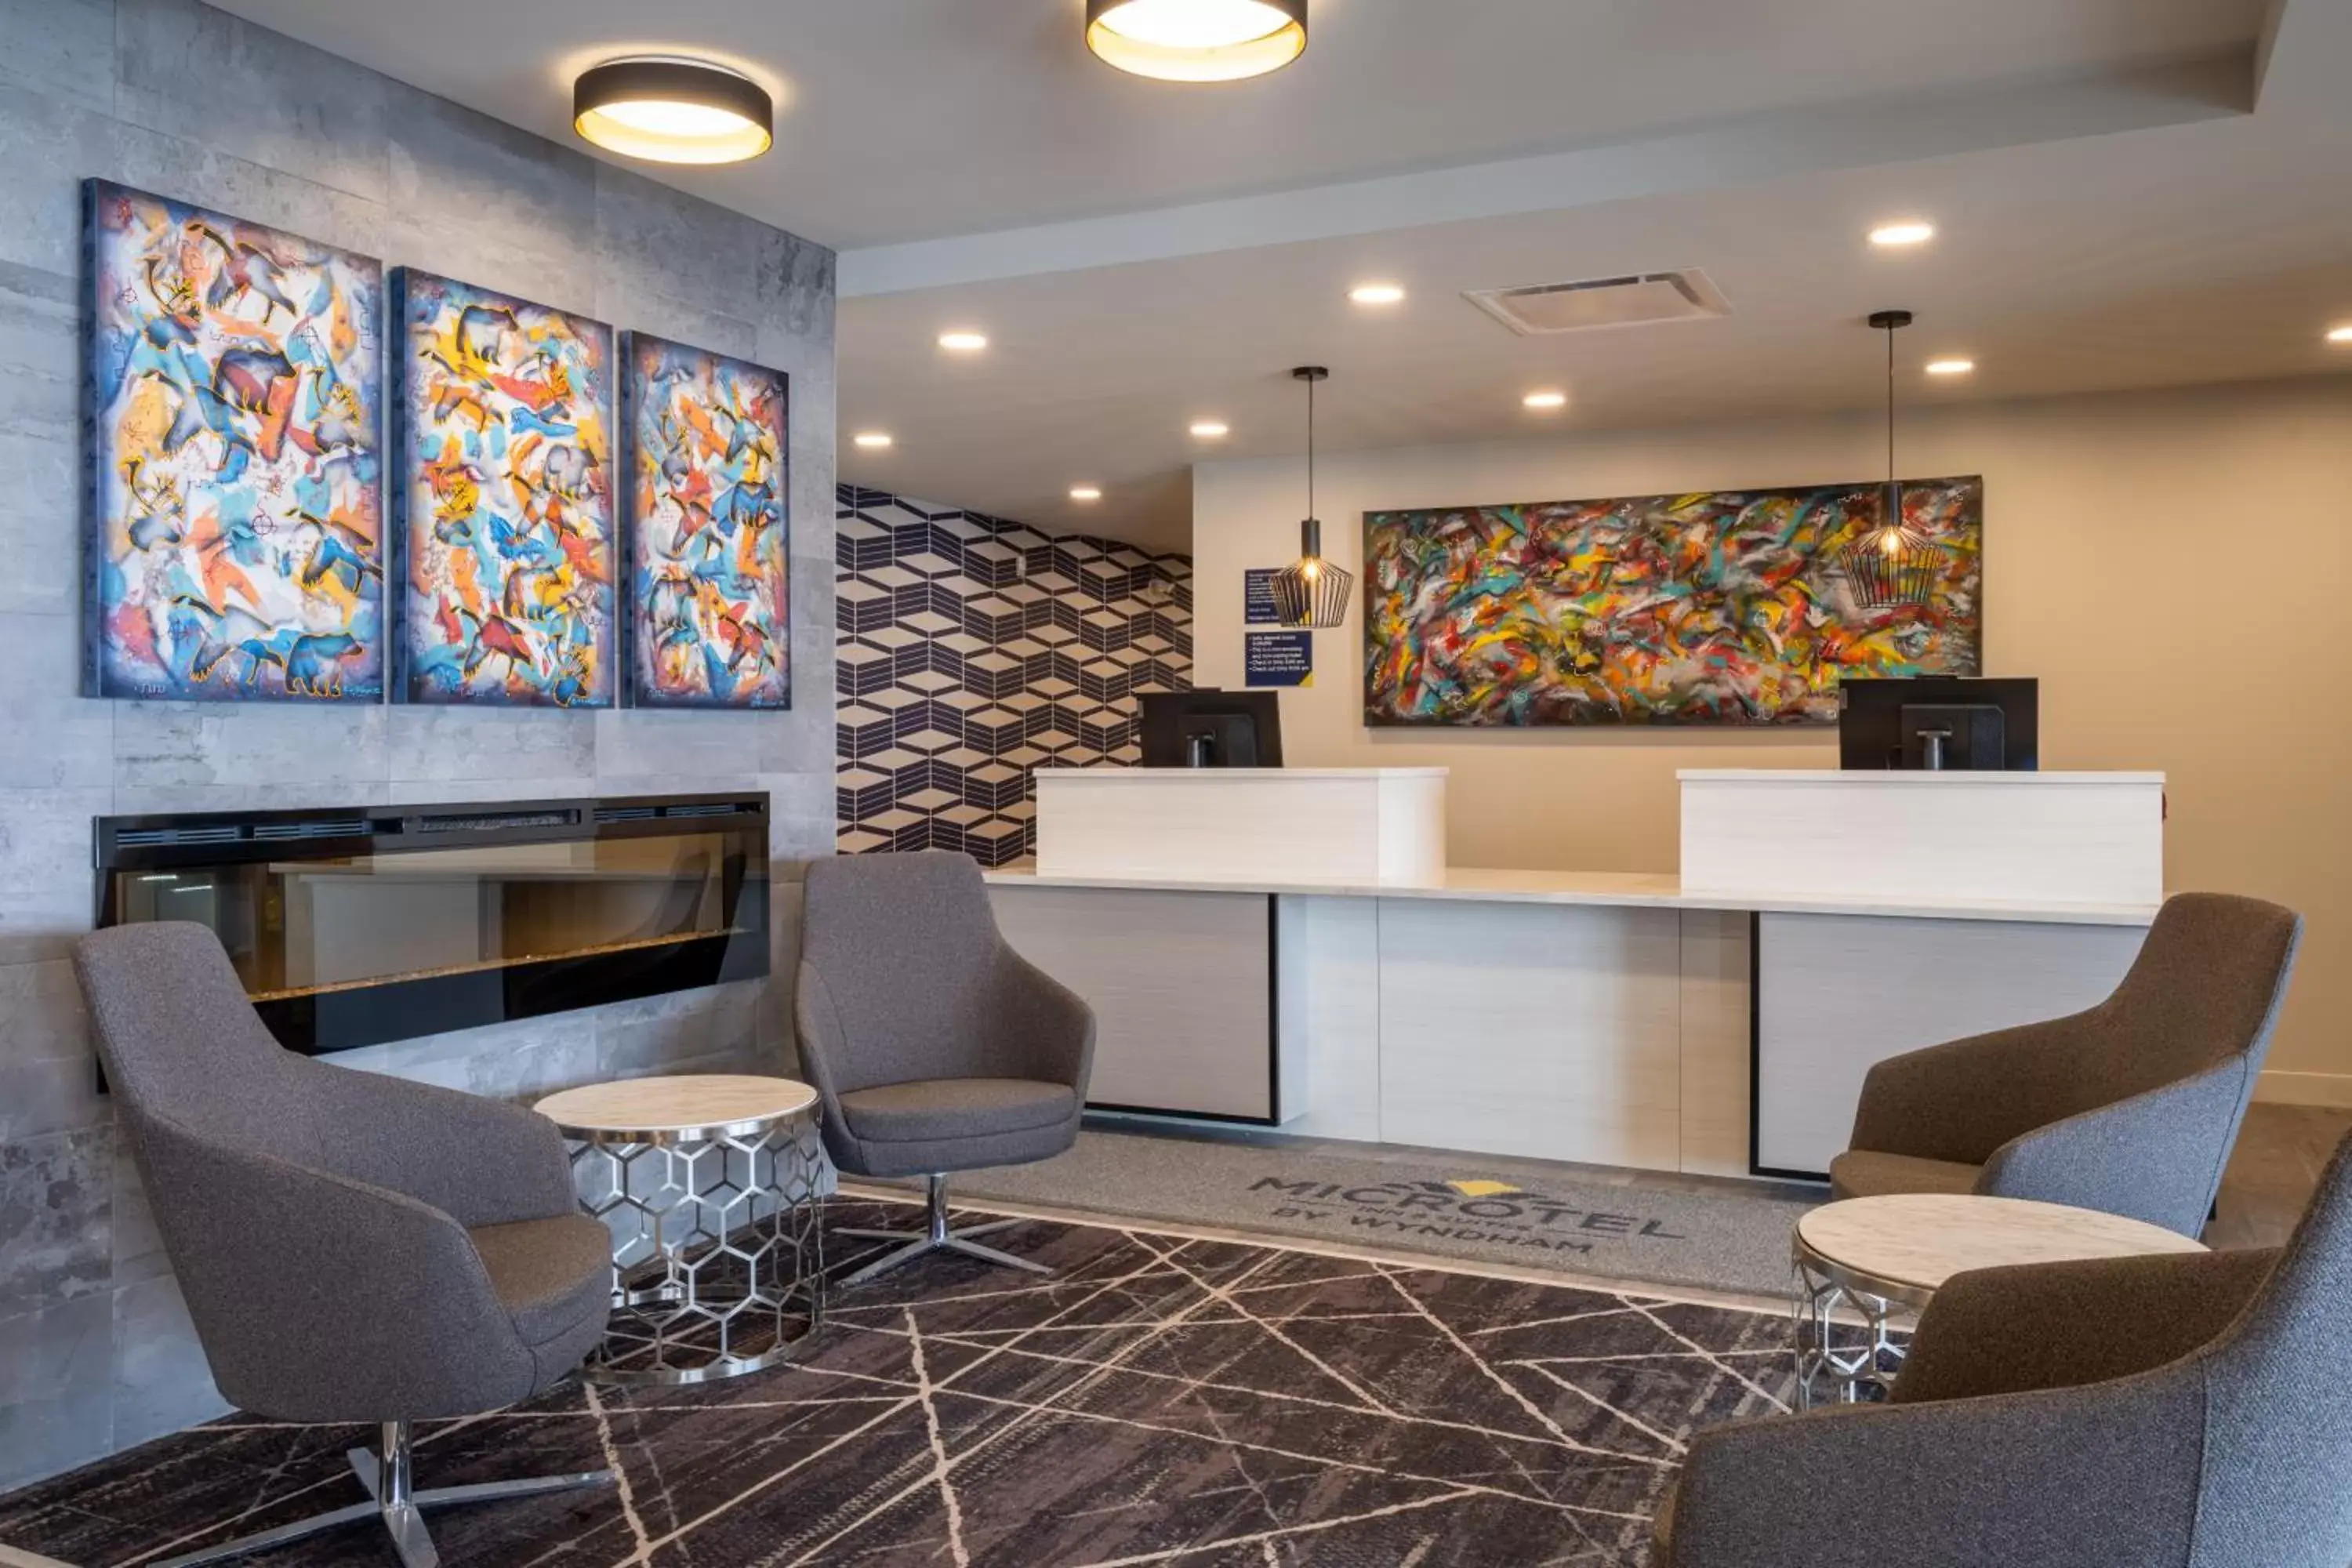 Lobby or reception, Lobby/Reception in Microtel Inn & Suites by Wyndham Kanata Ottawa West